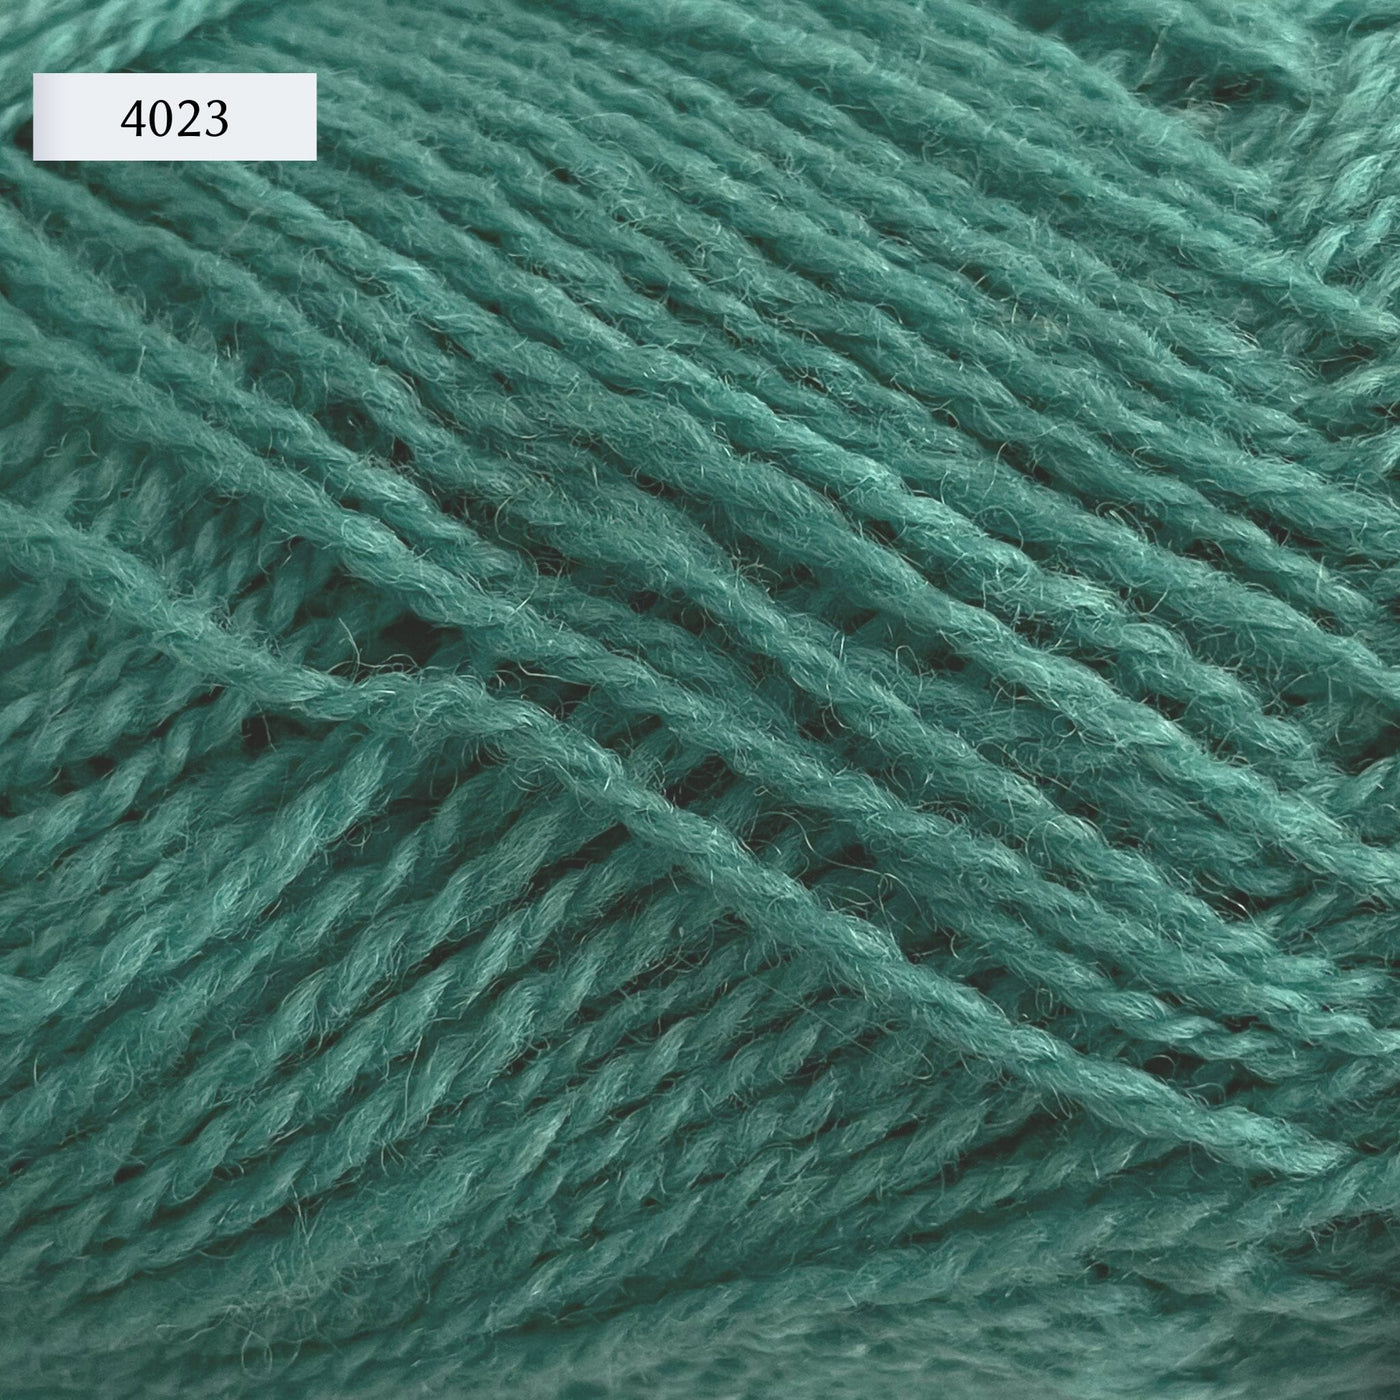 Rauma Finullgarn, a fingering/sport weight yarn, in color 4023, a medium seafoam green